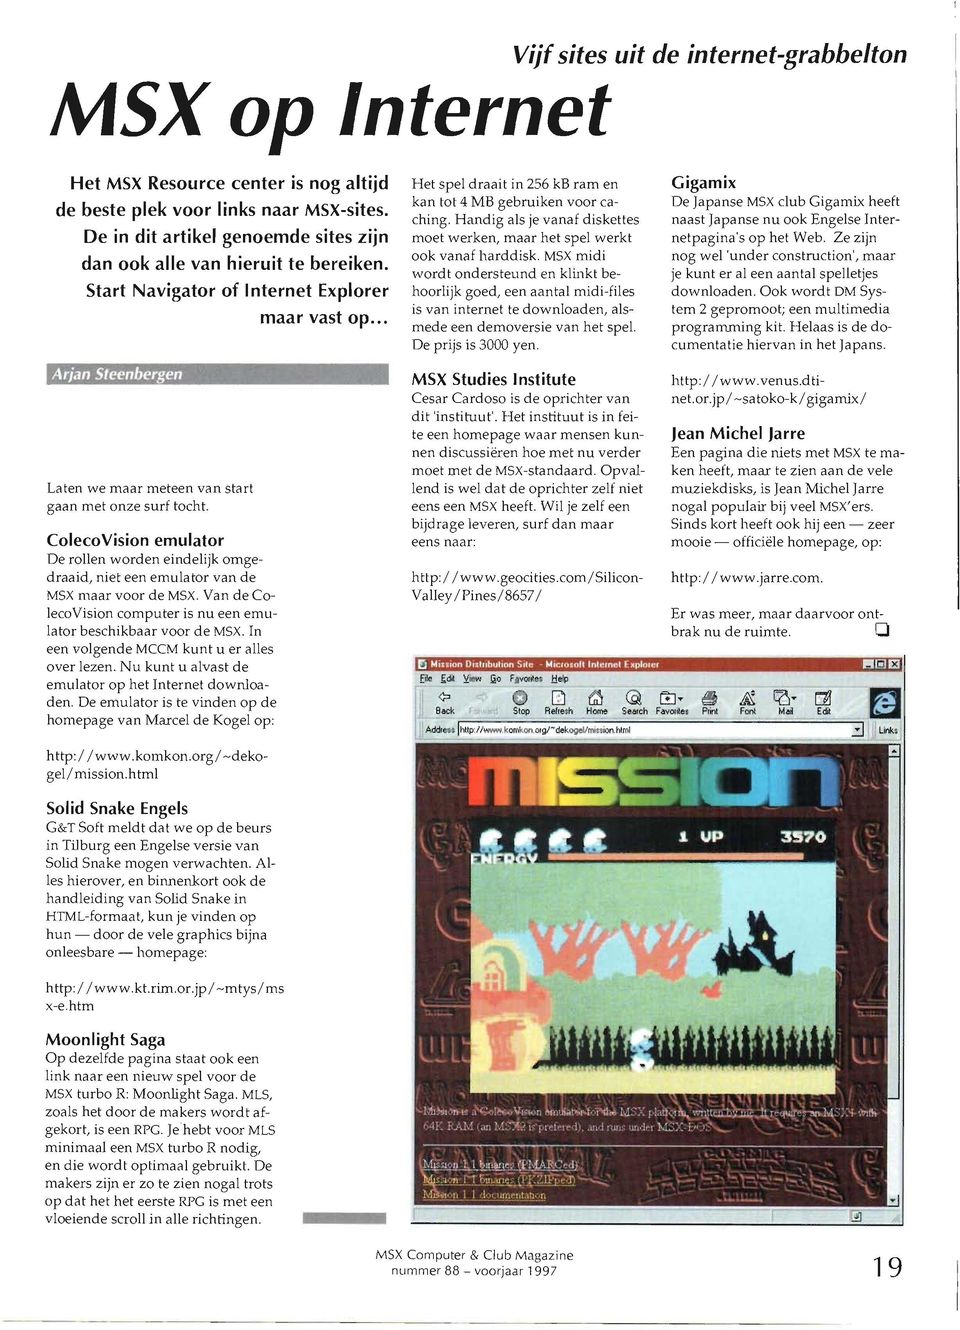 ColecoVision emulator De rollen worden eindelijk omgedraaid, niet een emulator van de MSX maar voor de MSX. Van de ColecoVision computer is nu een emulator beschikbaar voor de MSX.